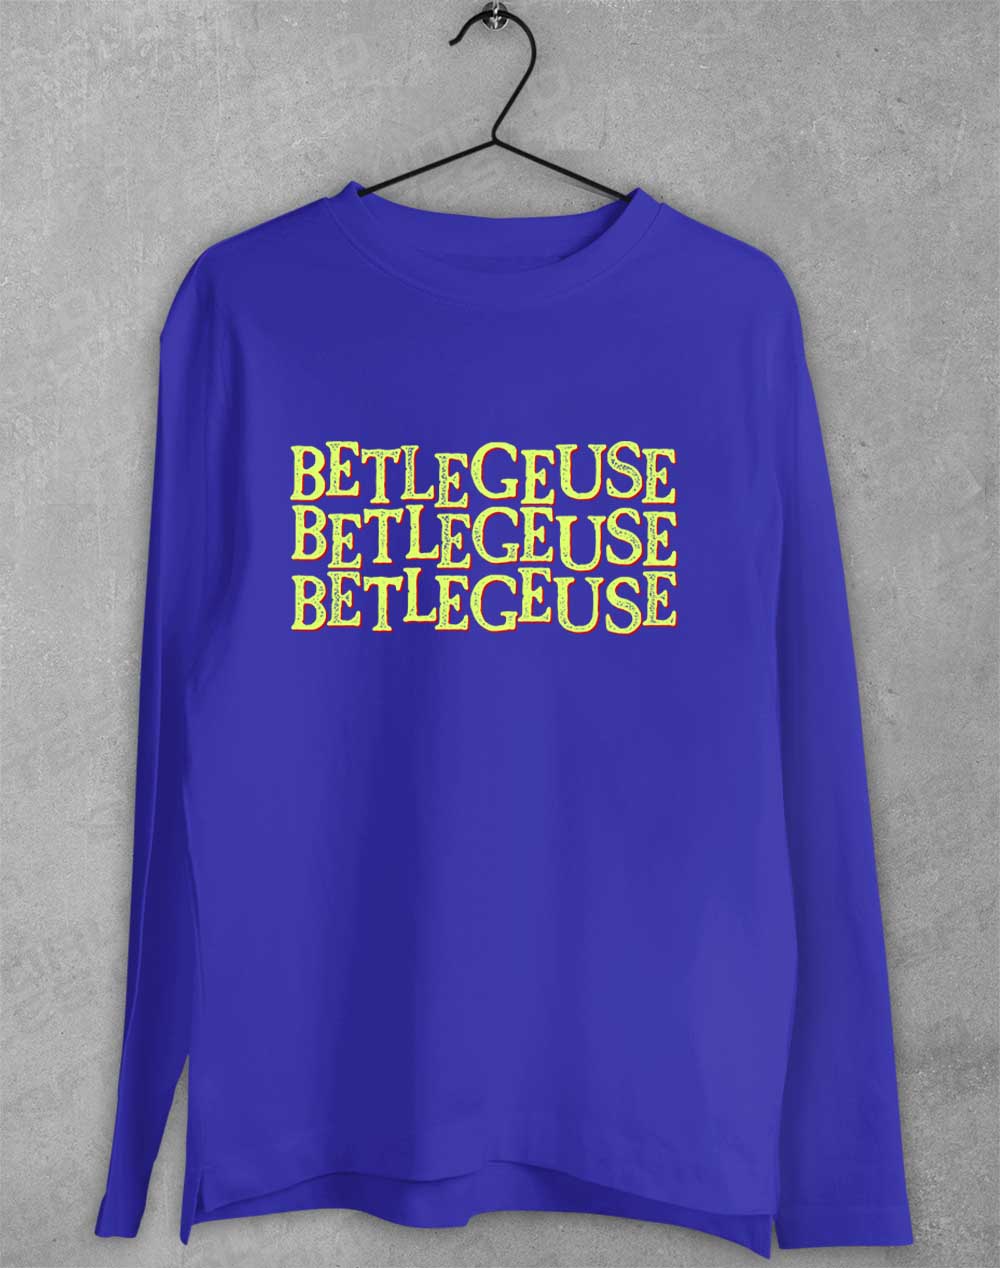 Royal - Betelgeuse Betelgeuse Betelgeuse Long Sleeve T-Shirt